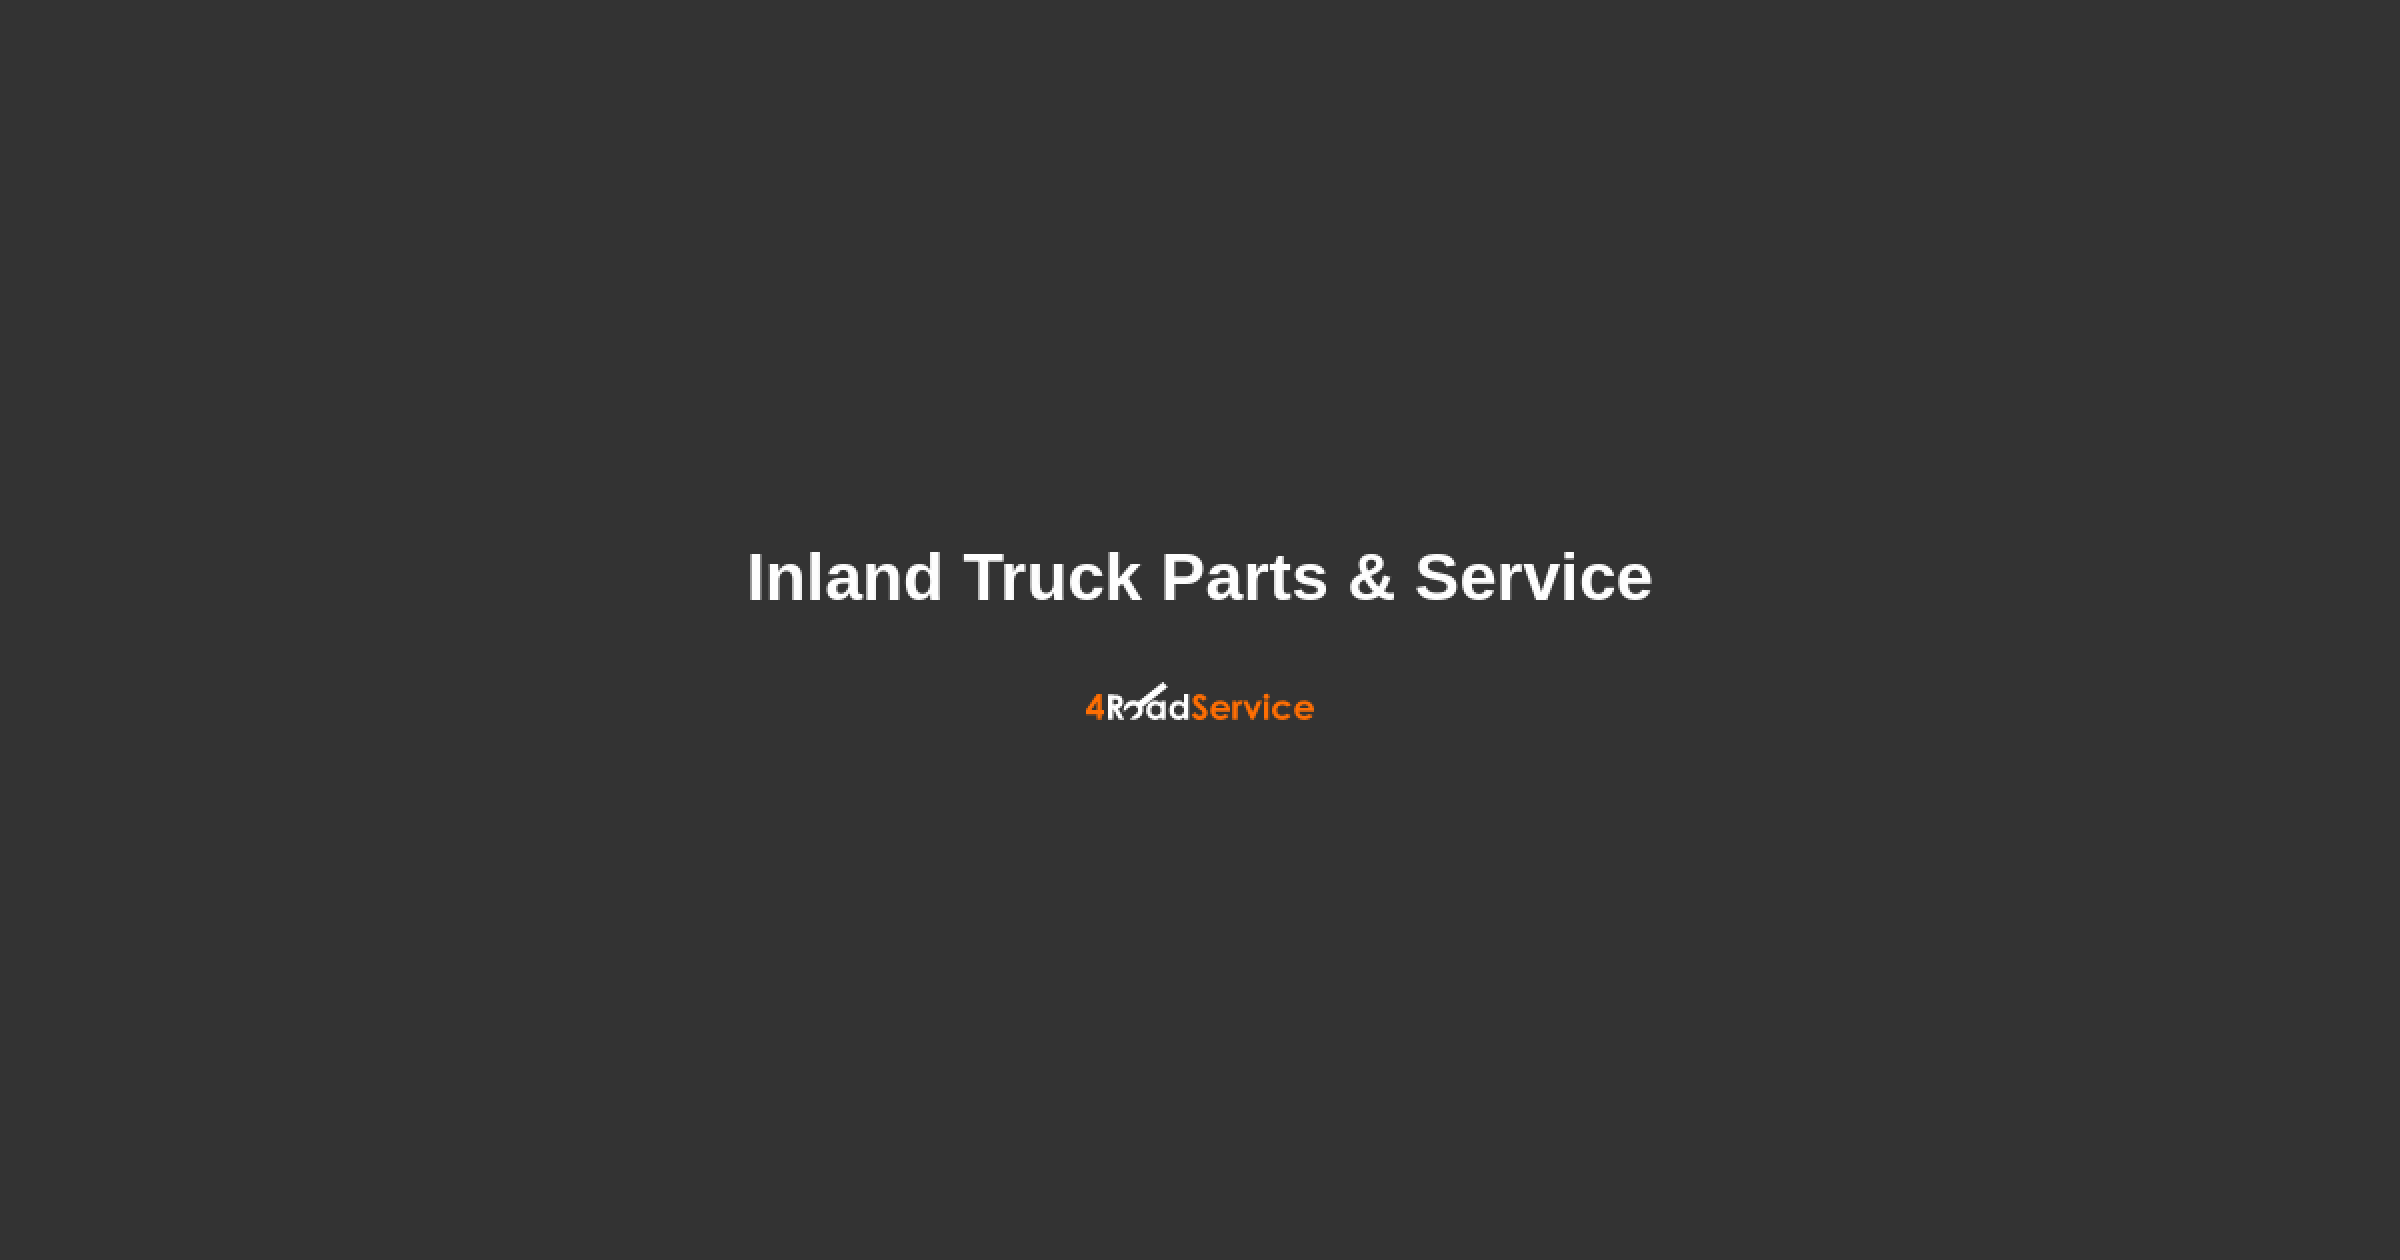 inland truck parts & service bismarck nd